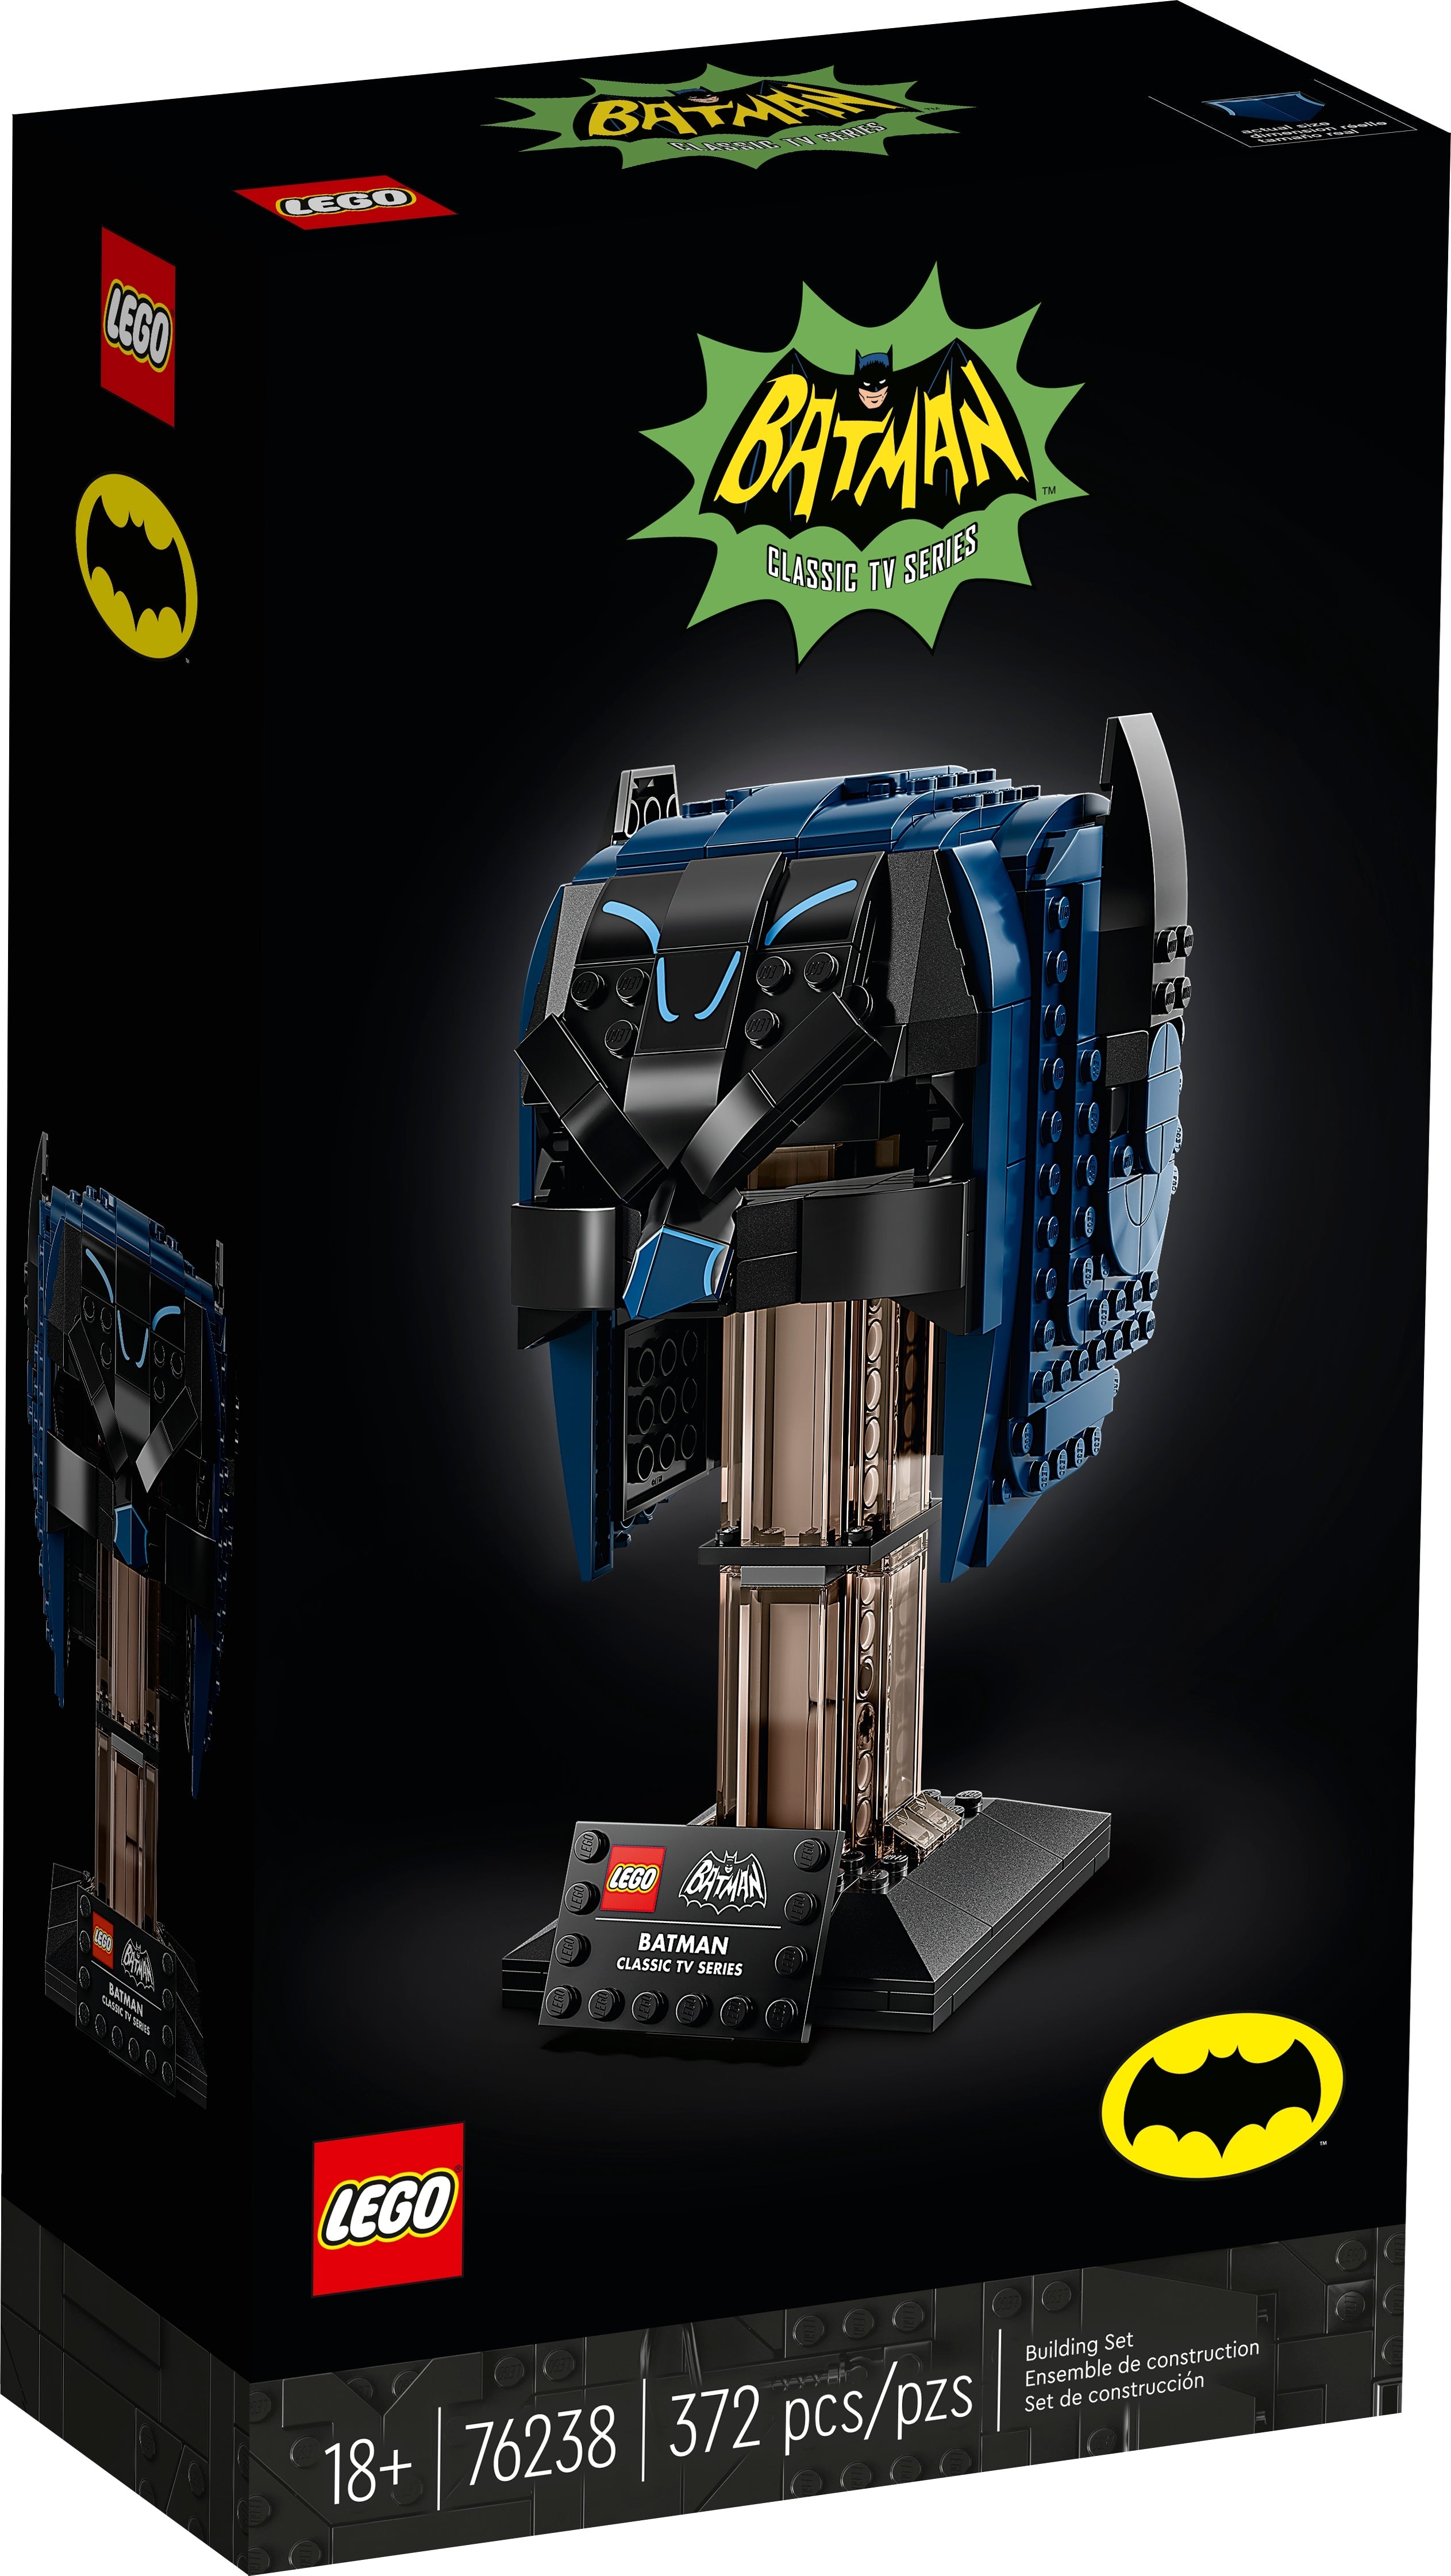 LEGO DC Super Heroes Batman Maske aus dem TV-Klassiker (76238) - im GOLDSTIEN.SHOP verfügbar mit Gratisversand ab Schweizer Lager! (5702017072449)